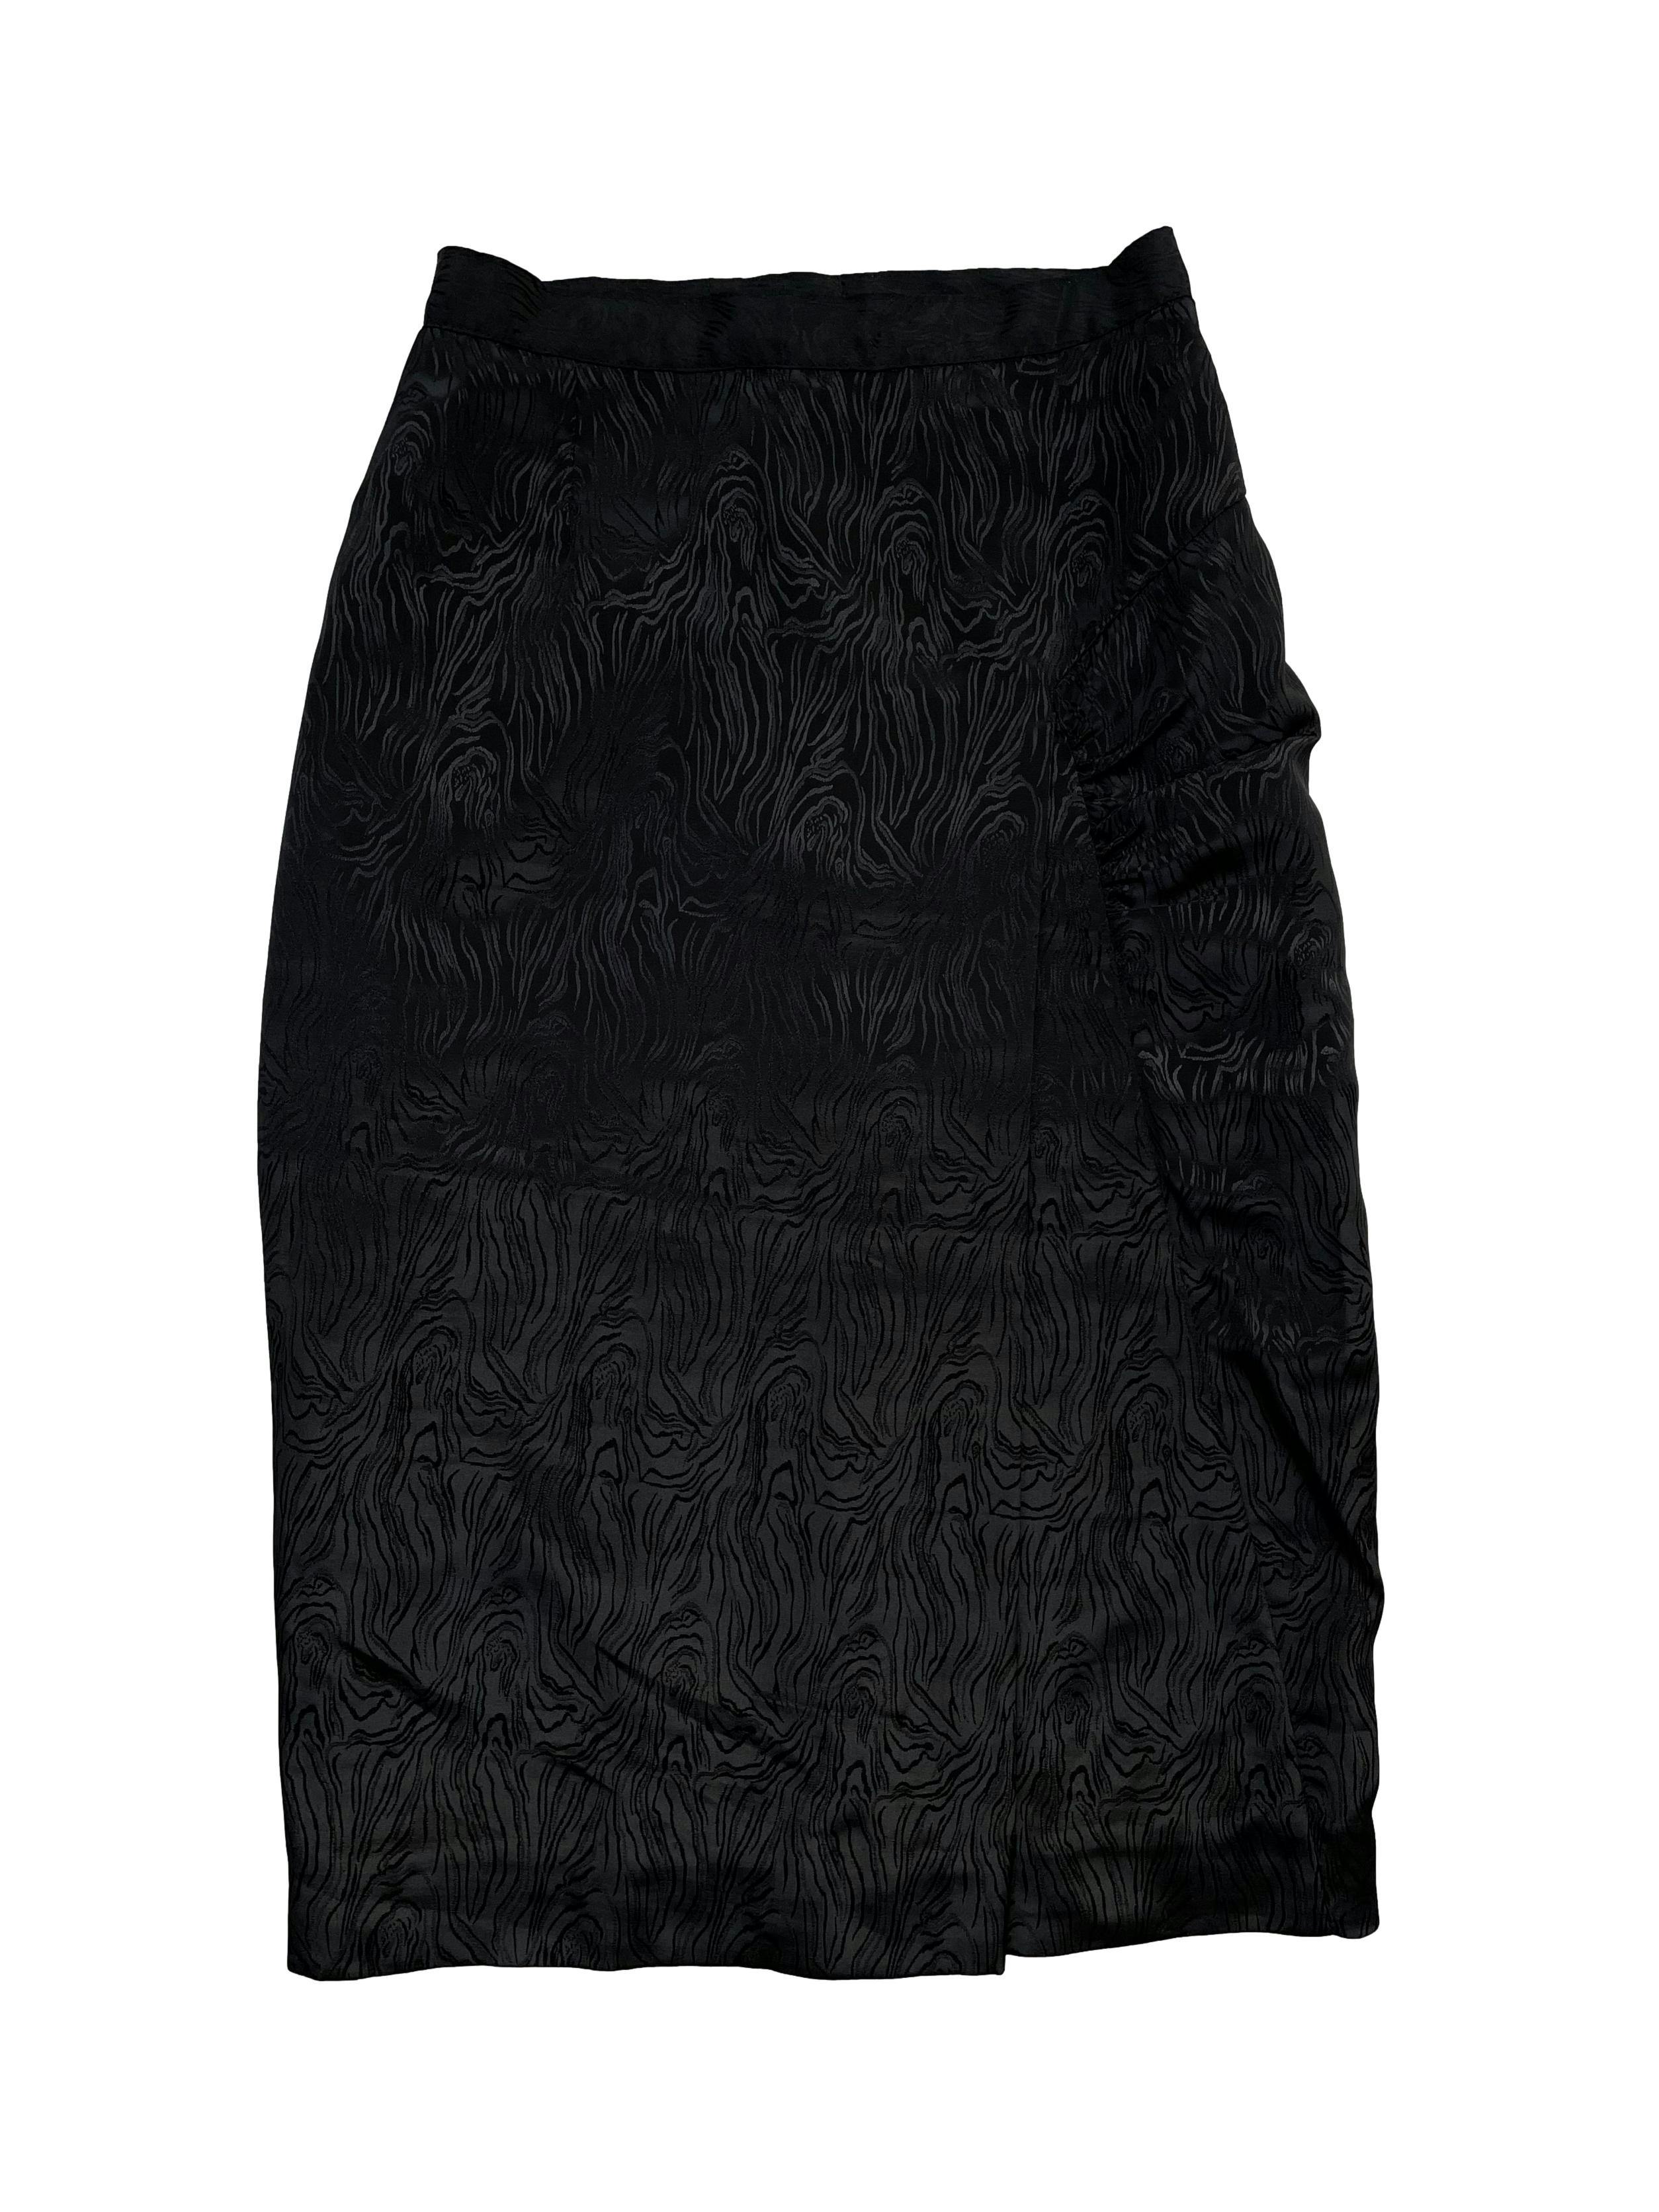 Falda lápiz negra tipo seda forrada, drapeado lateral con pliegue y cierre posterior. Cintura 66cm, Largo 73cm.